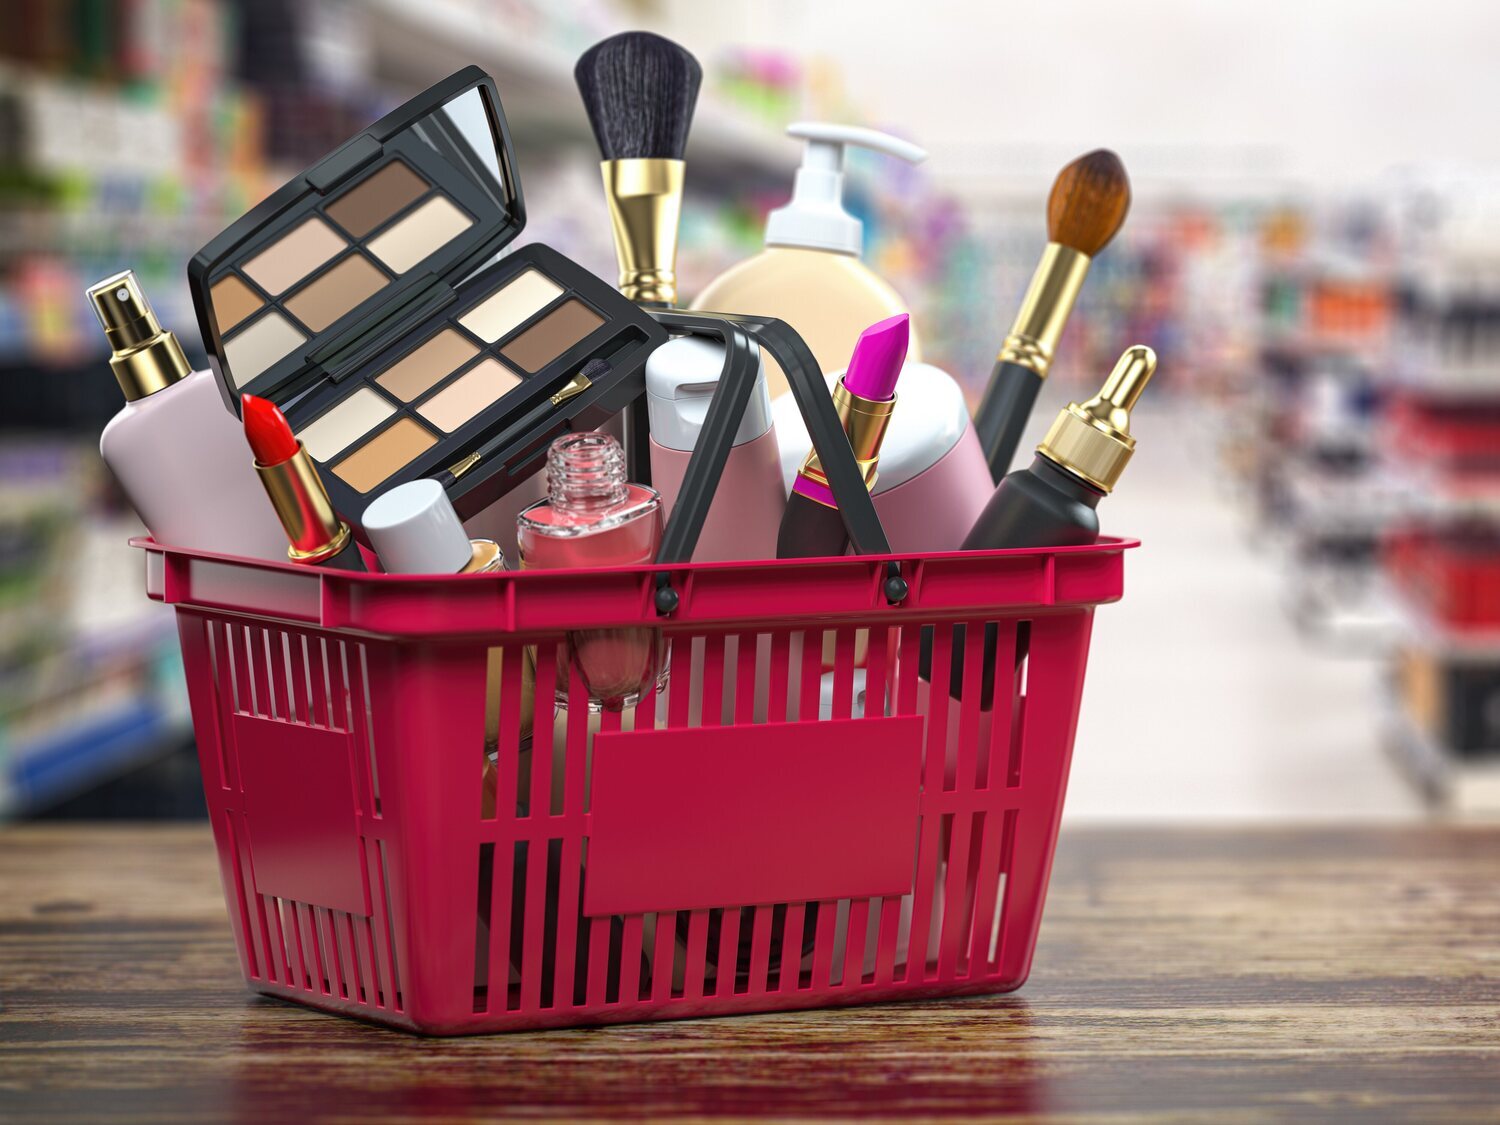 Los mejores supermercados para comprar cosméticos, según la OCU